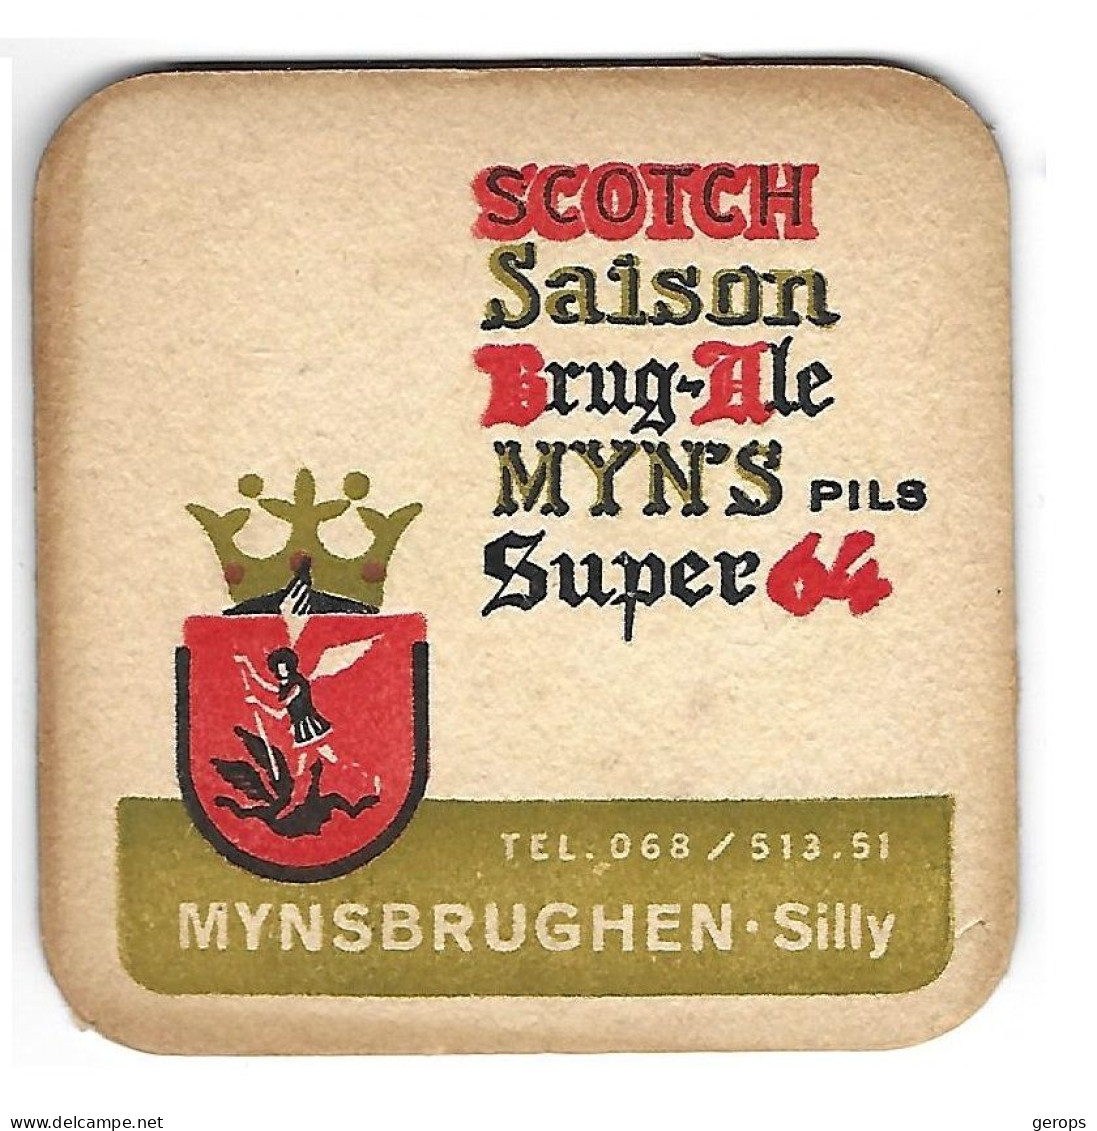 1000a Brie. Mynsbrughen Silly 94-94 - Beer Mats